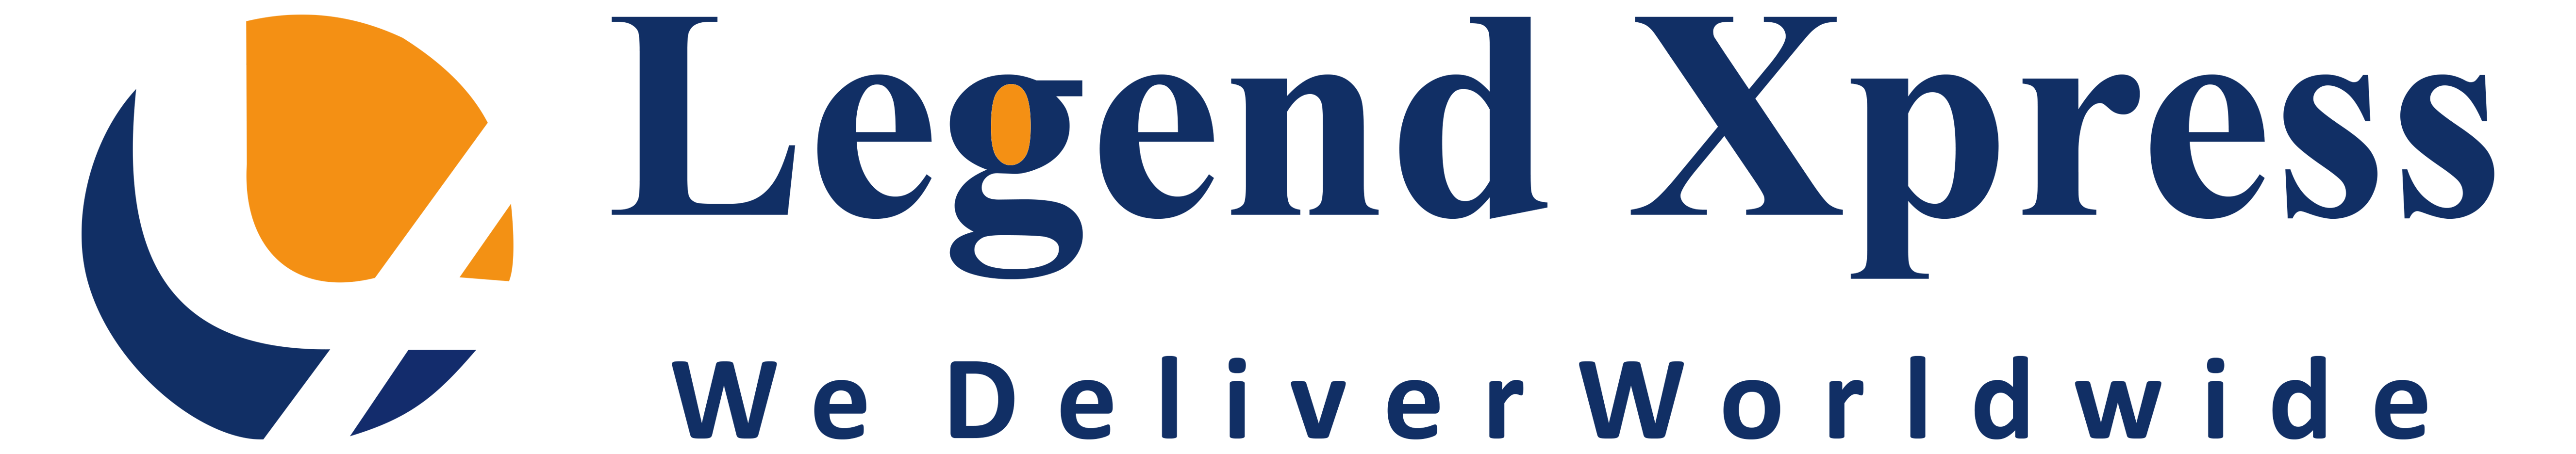 Legend Xpress india logo